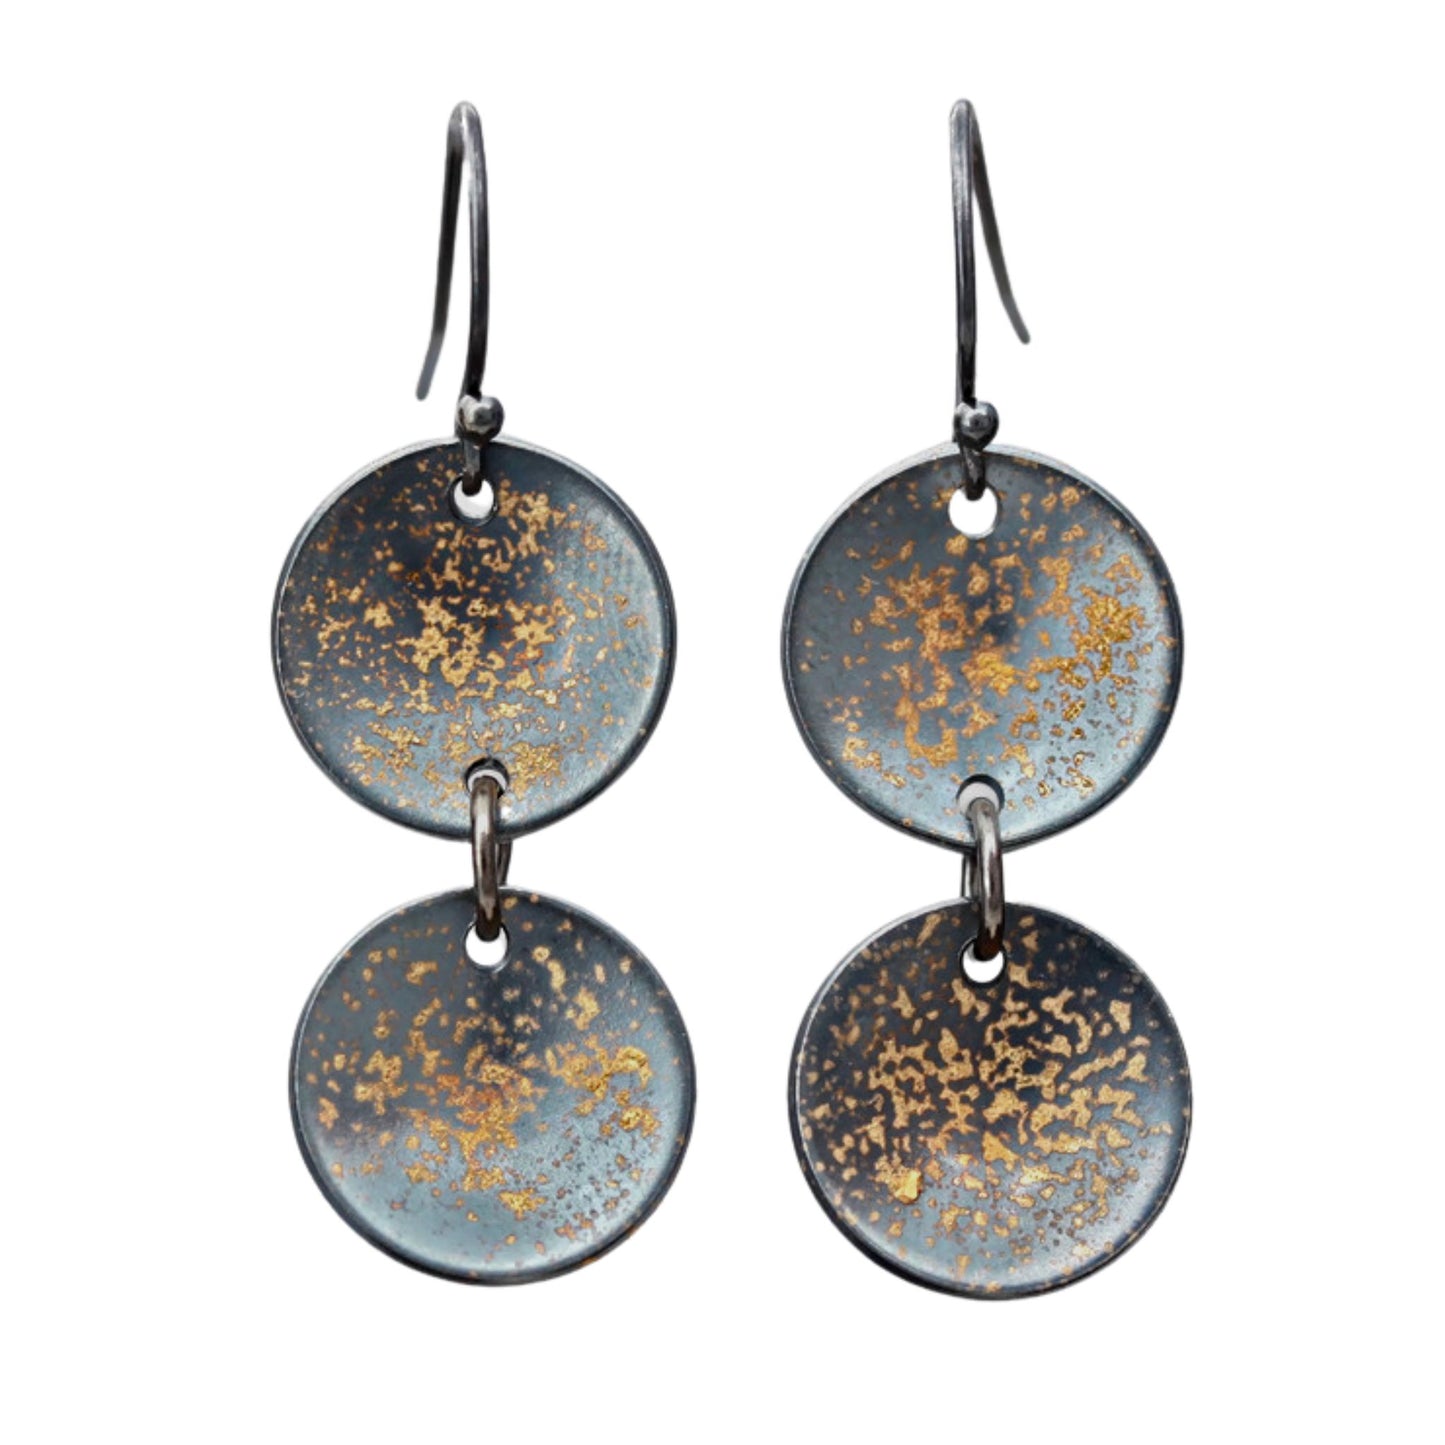 Galaxy 2 coin earrings by Jen Lesea Designs